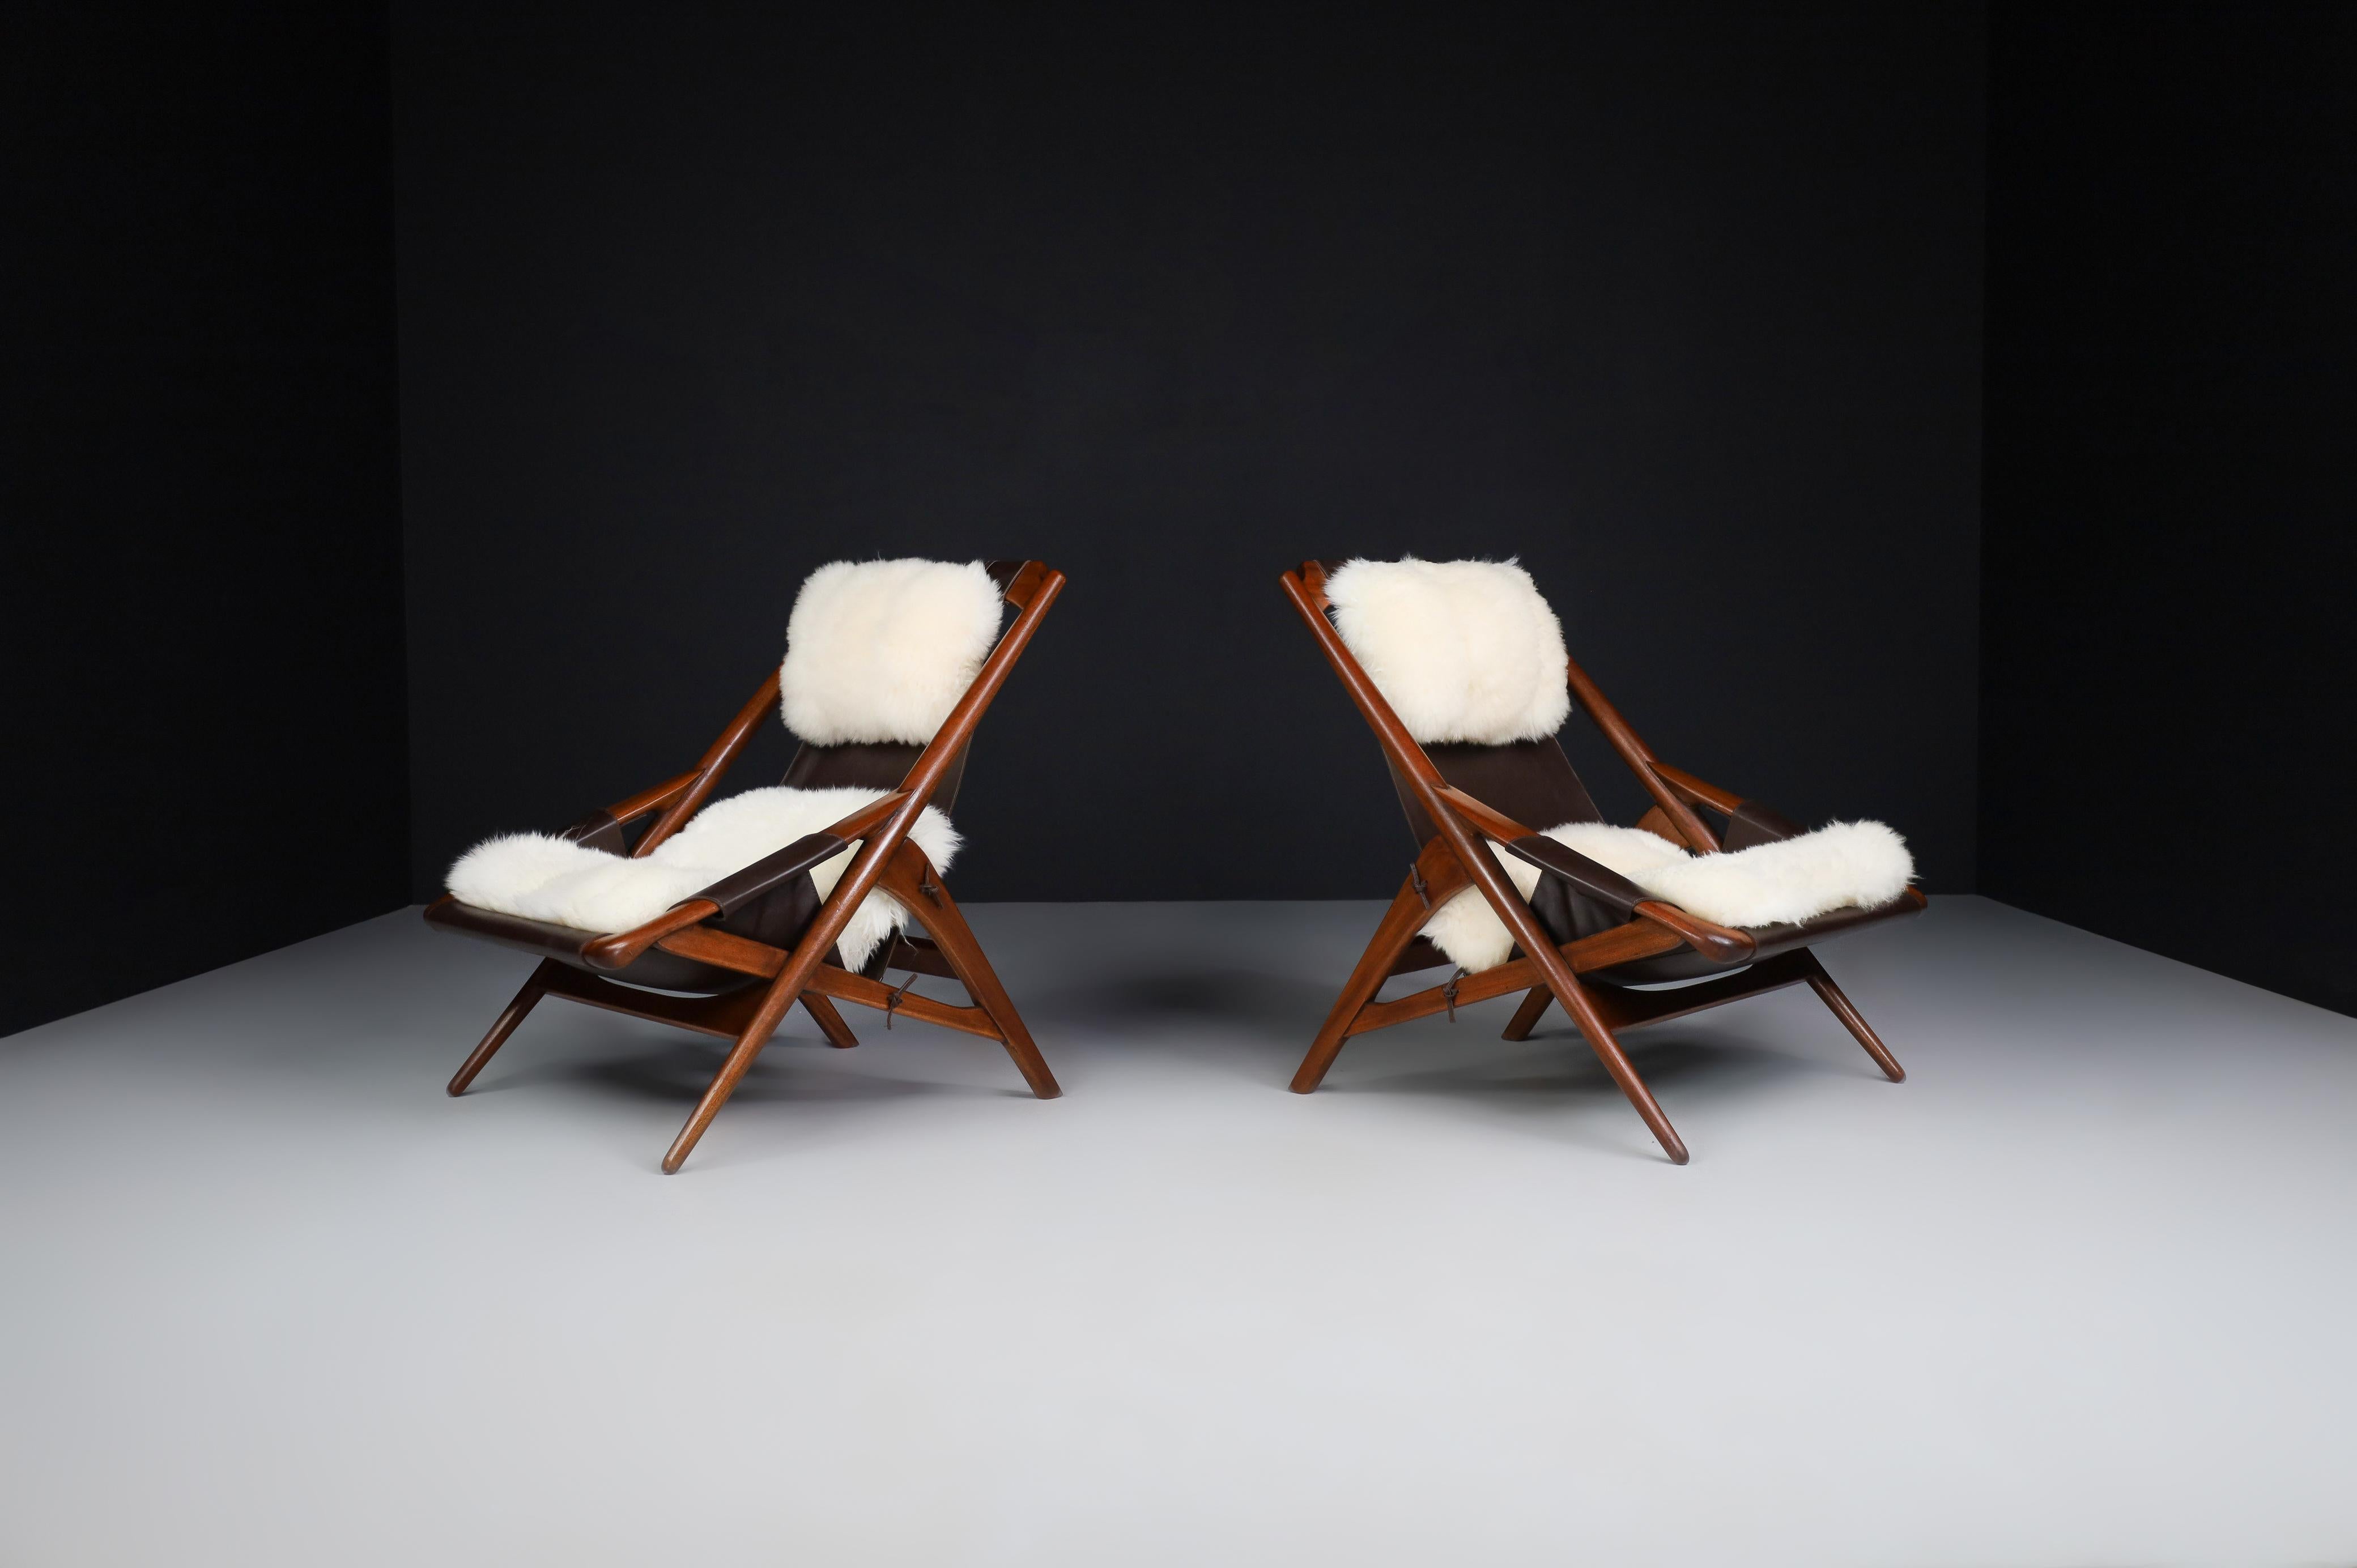 W.D. Chaises longues Andersag en teck et cuir, Italie 1959

Exceptionnelle paire de chaises longues dites 